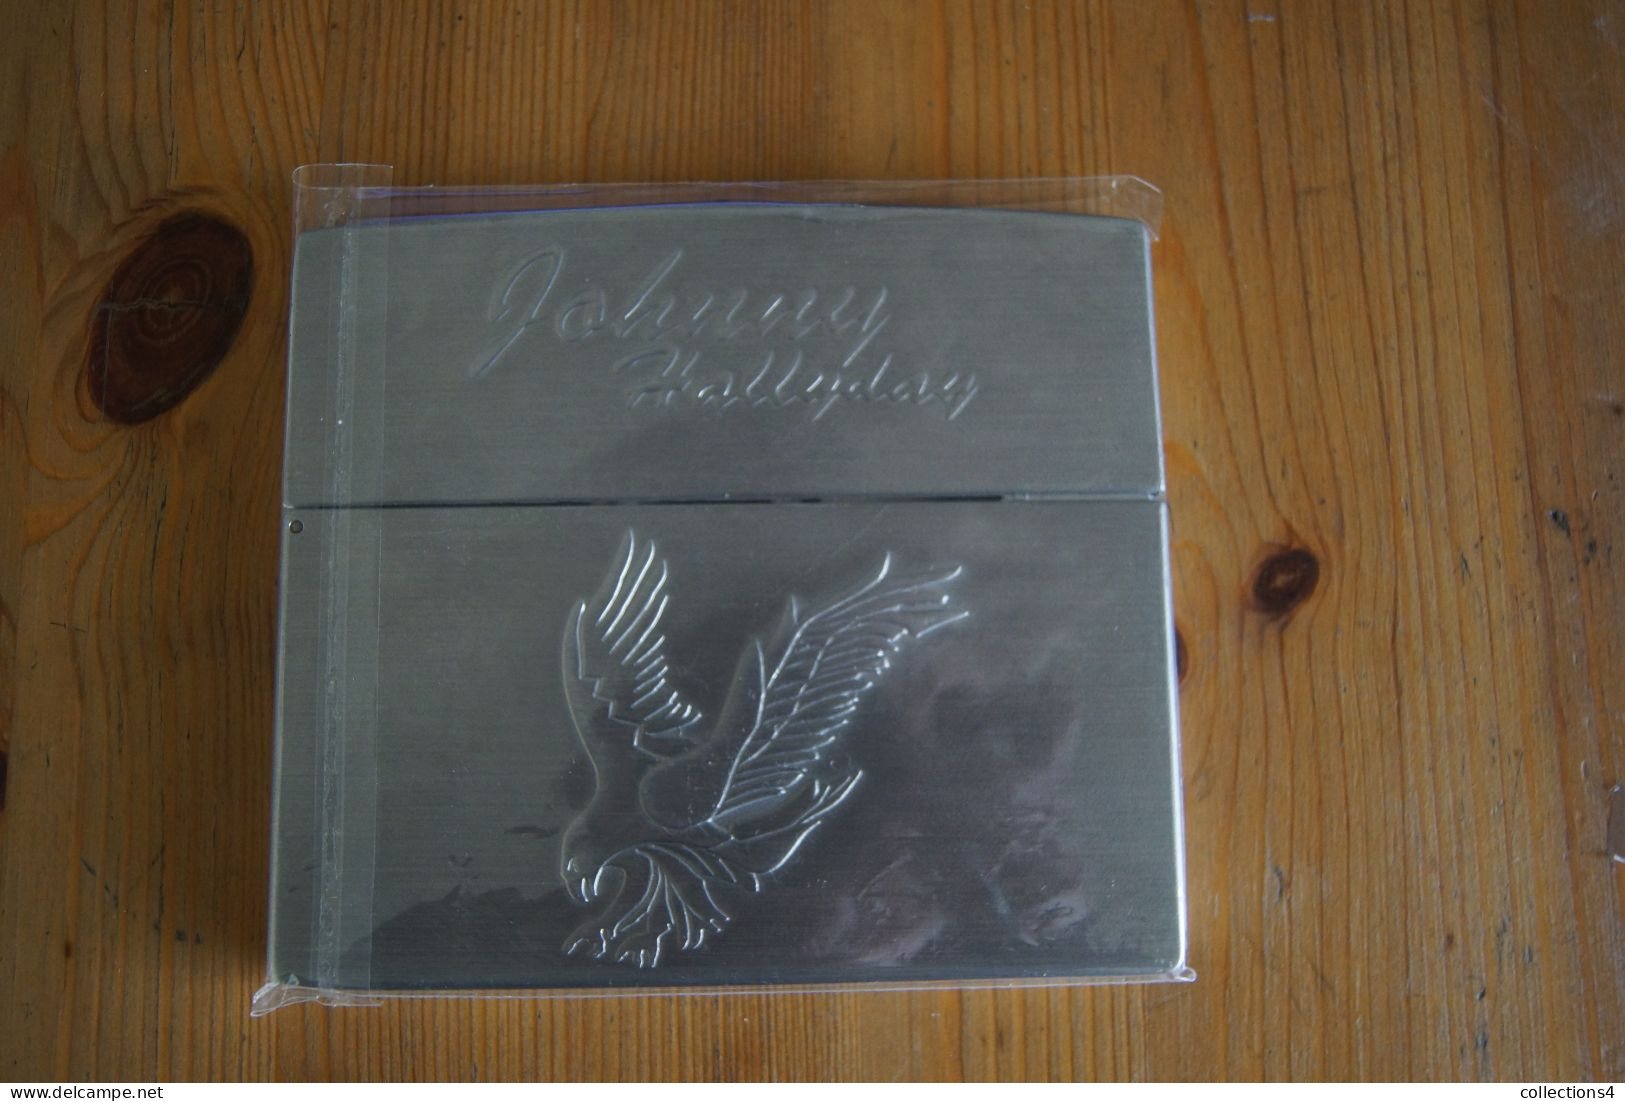 JOHNNY HALLYDAY LORADA TOUR 2 CD EDITION COLLECTOR METAL BRIQUET ZIPPO TRES RARE NEUF SCELLE VALEUR+ +1996 - Rock